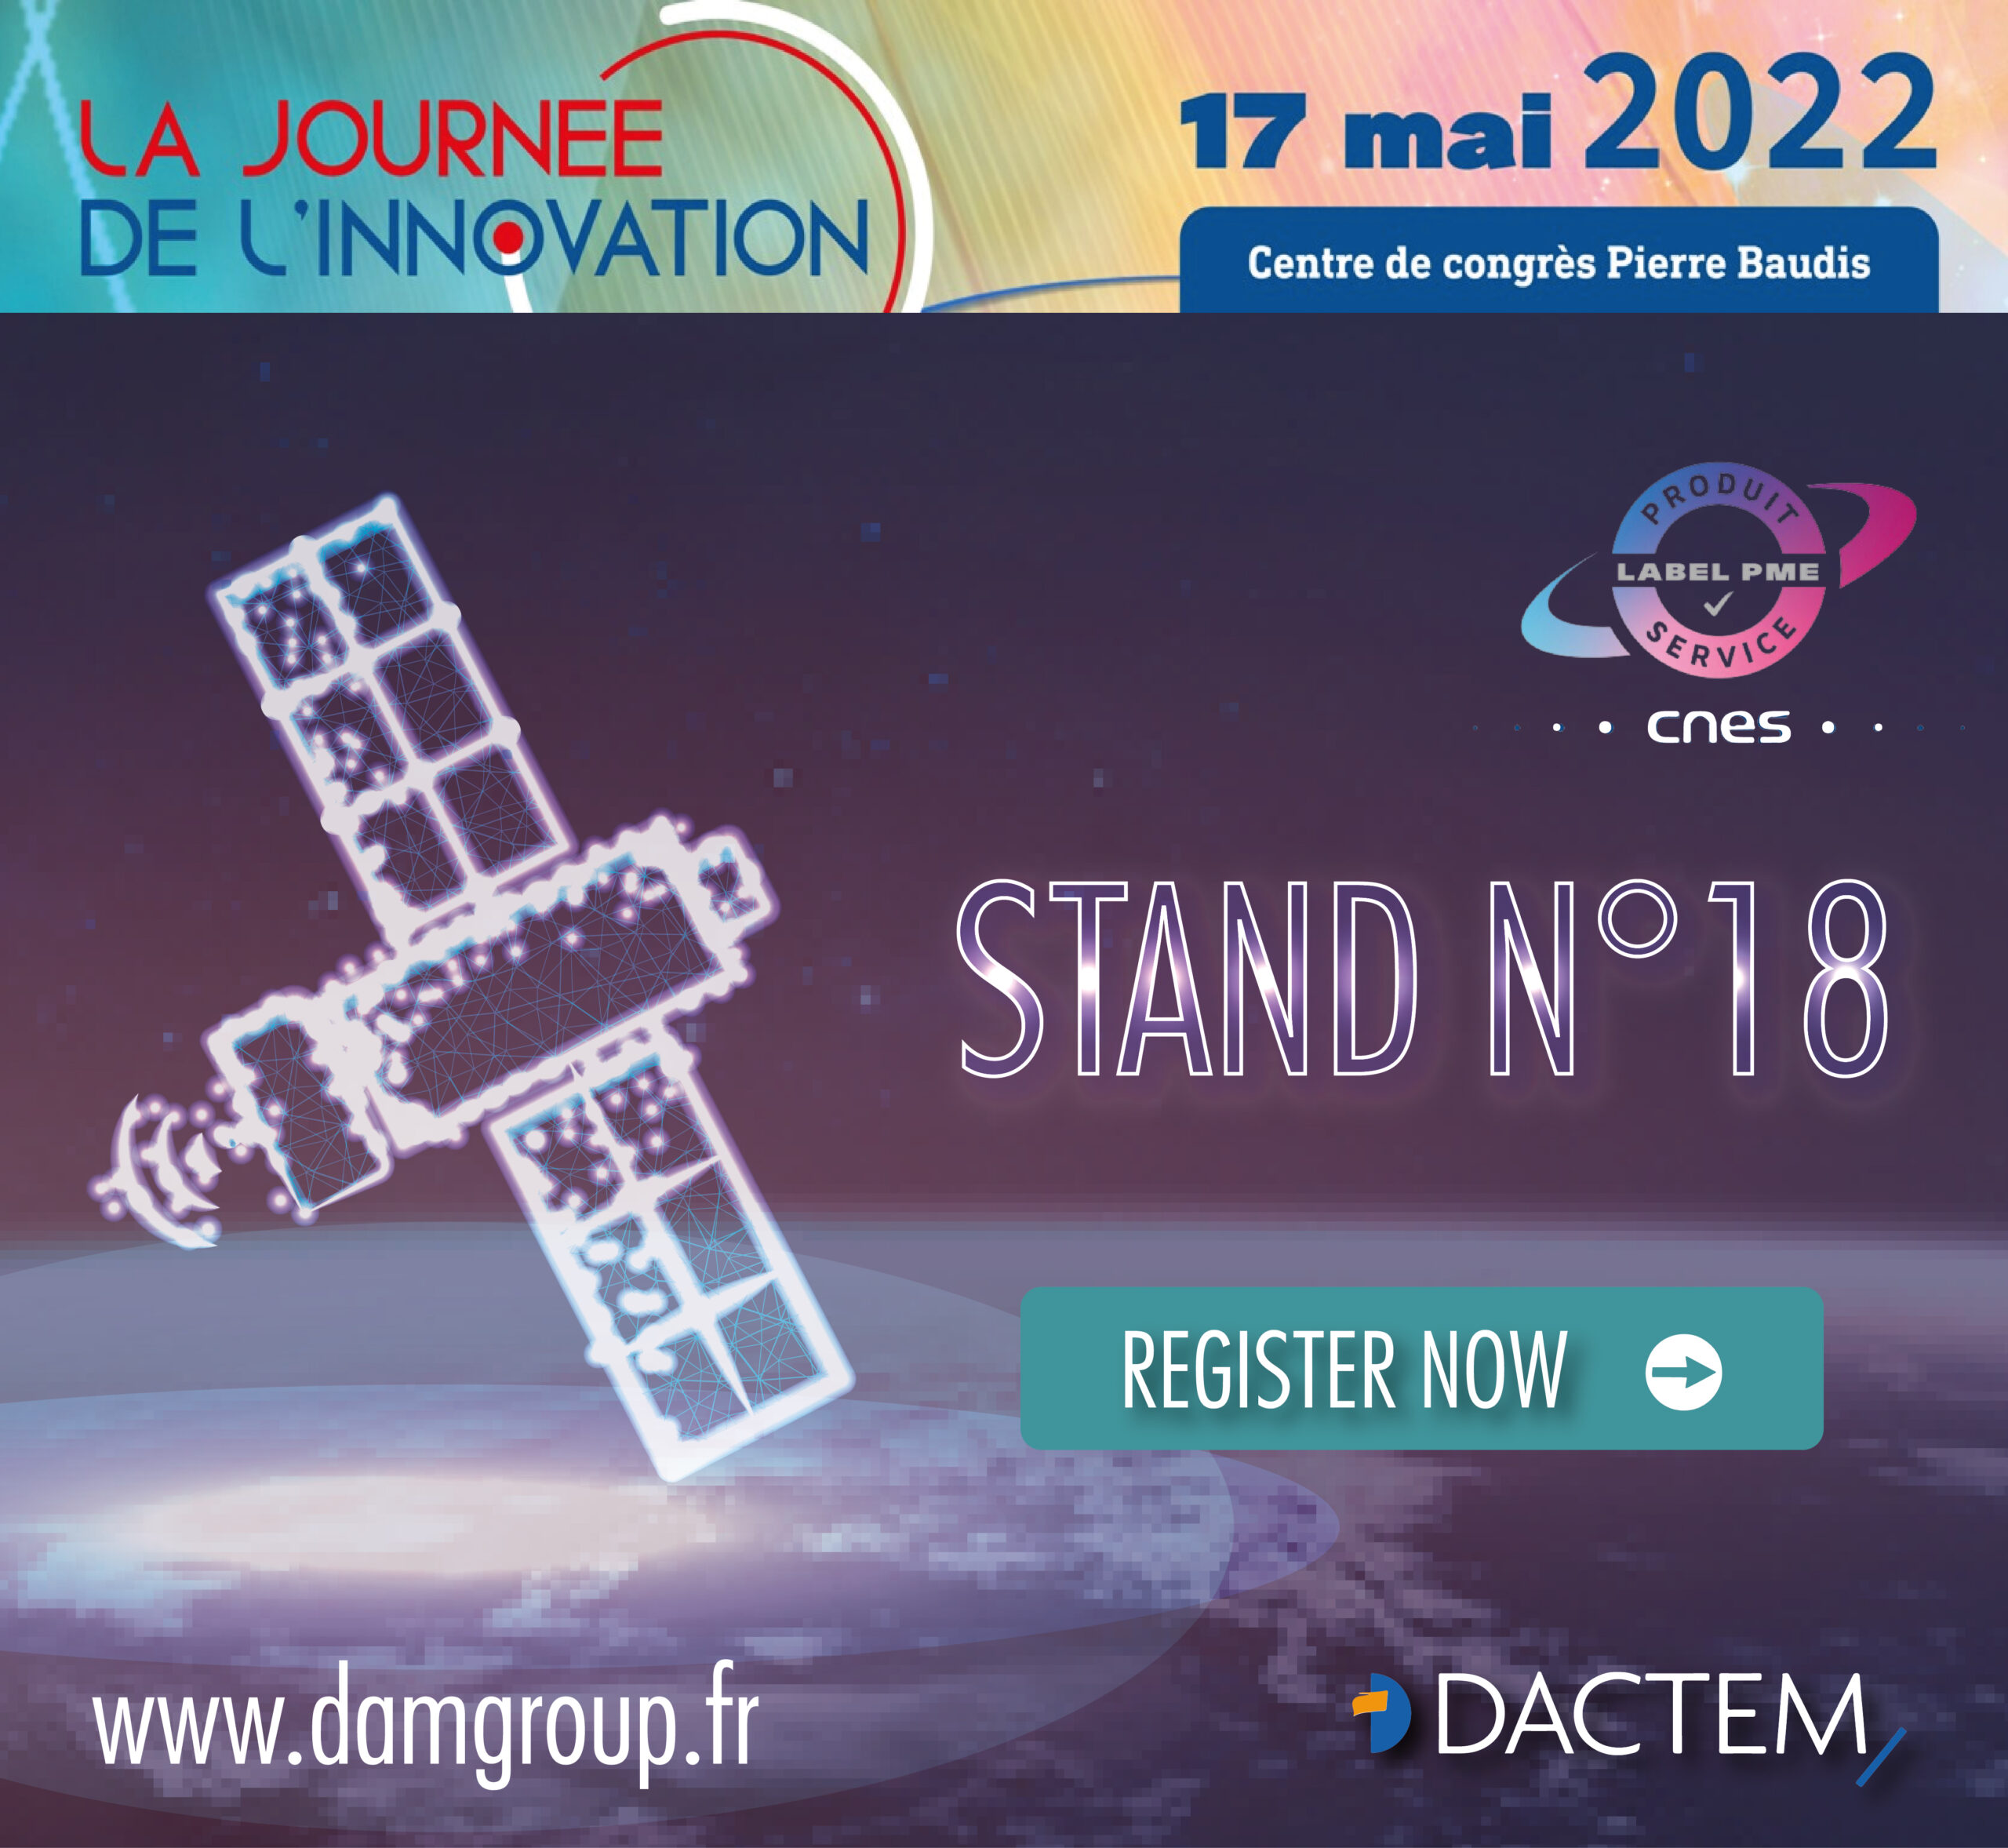 DACTEM, Journée de l'innovation CNES 2022